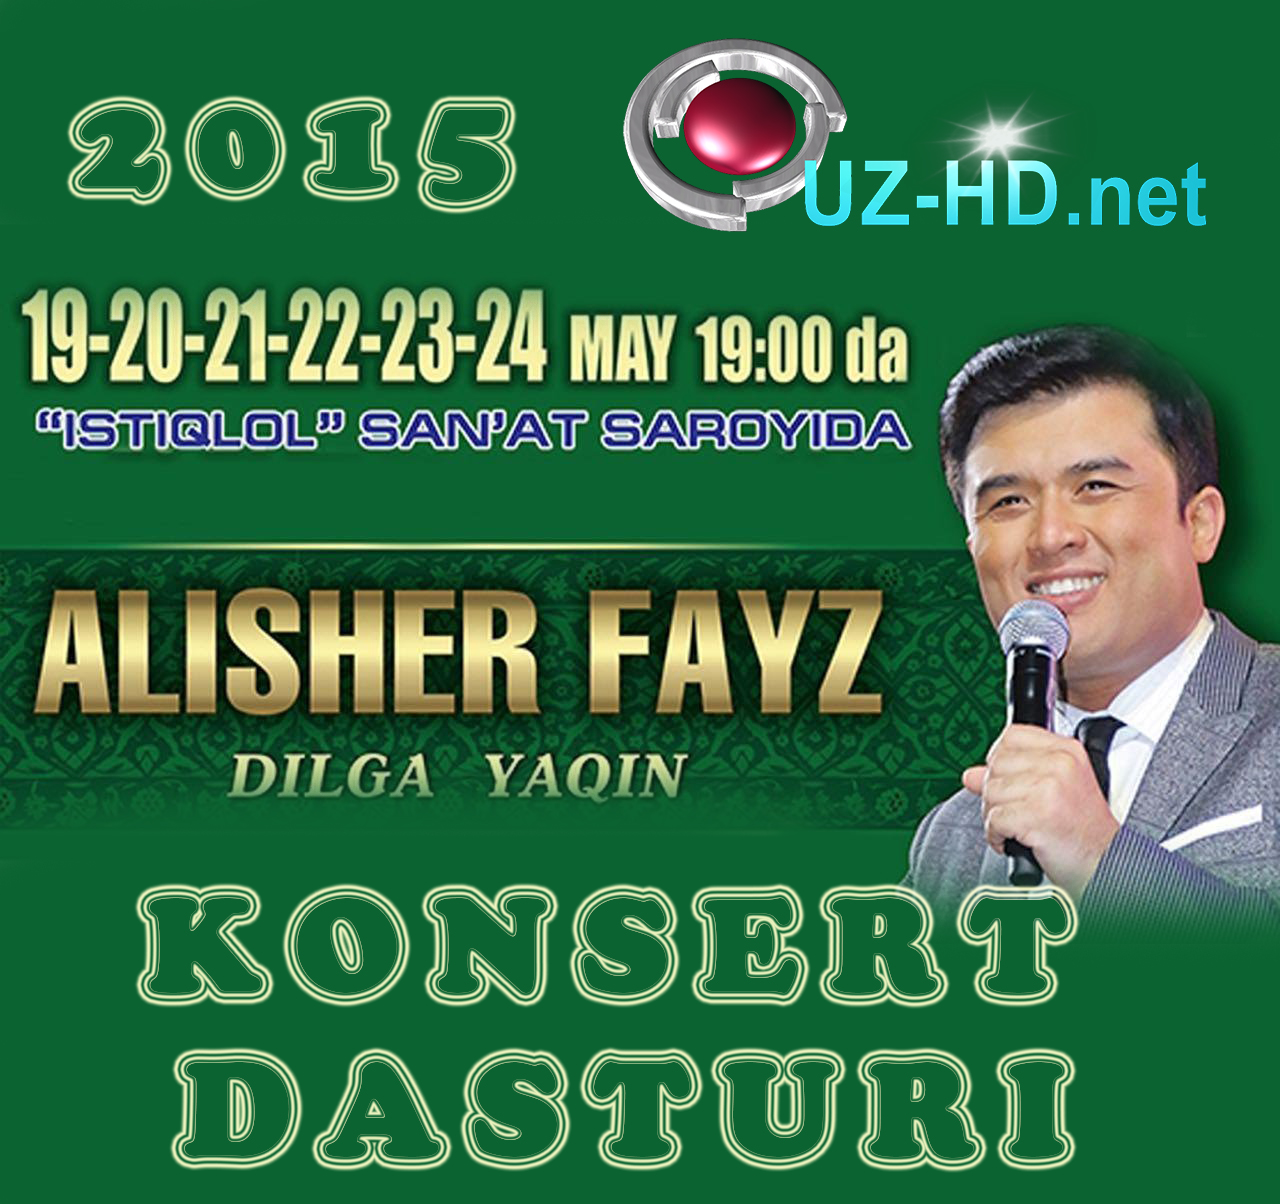 Alisher Fayz - Dilga yaqin nomli konsert dasturi - смотреть онлайн